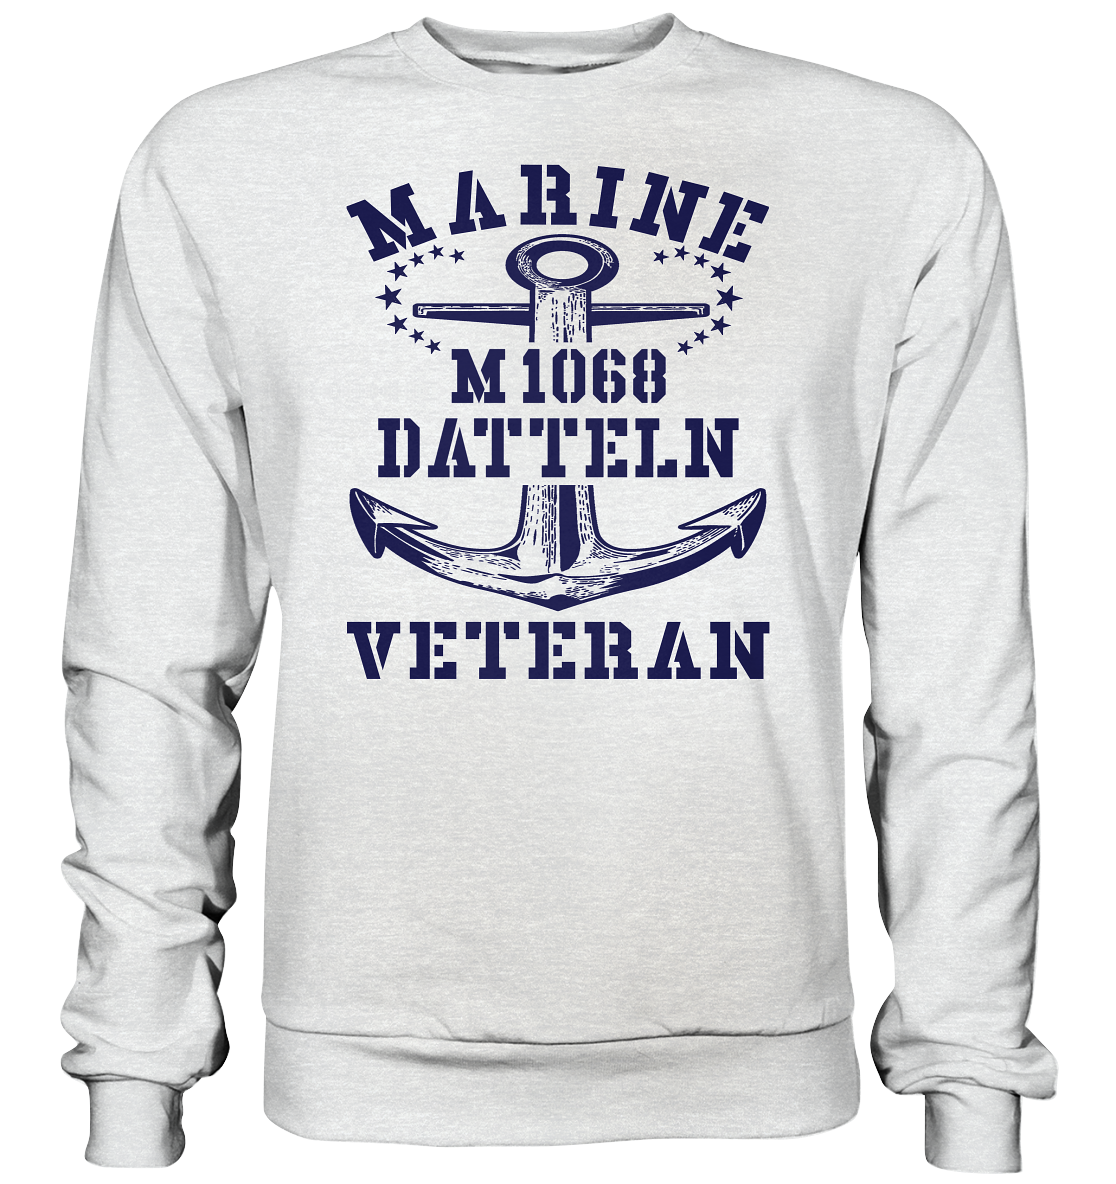 Mij.-Boot M1068 DATTELN Marine Veteran - Premium Sweatshirt